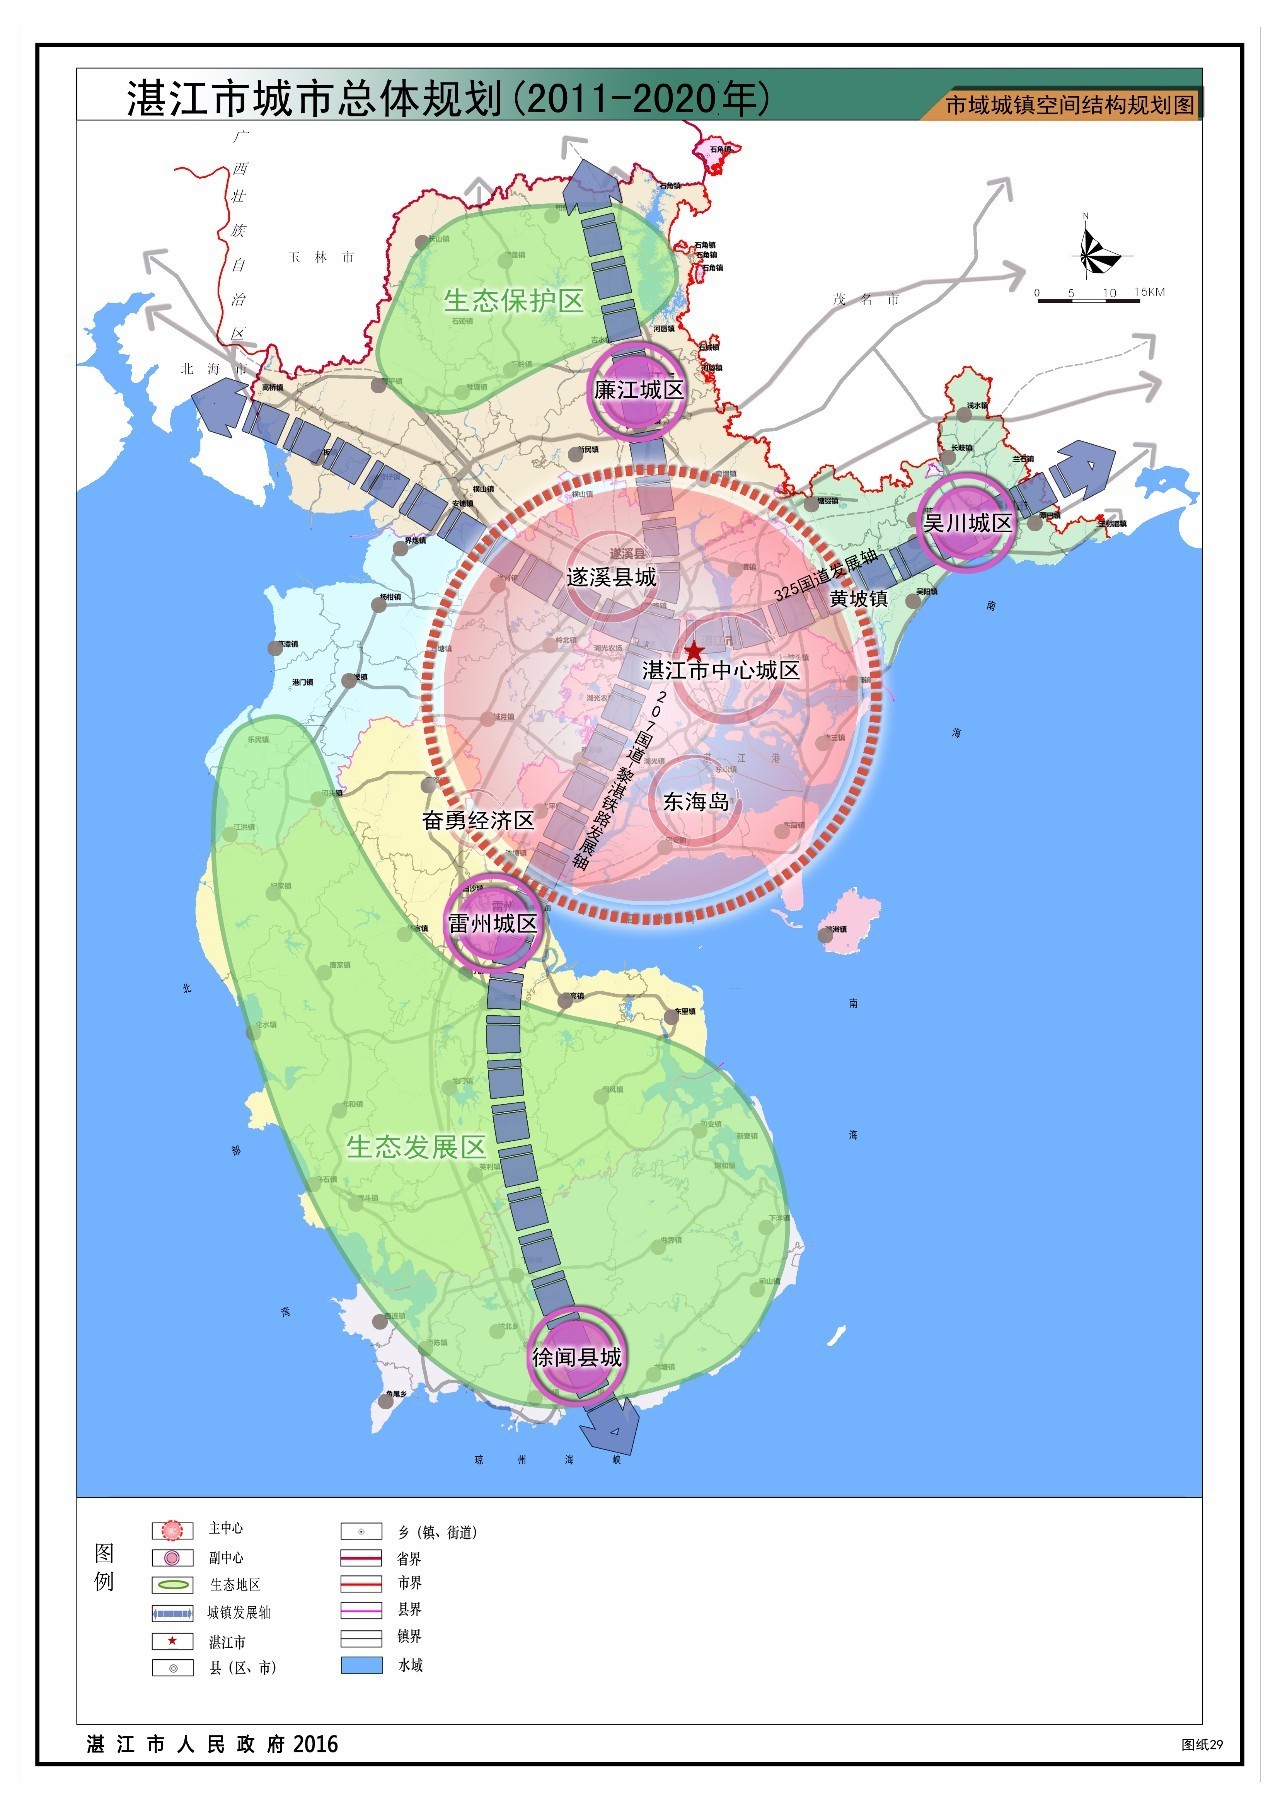 湛江最新城市总体规划公告,遂溪将被纳入主中心?